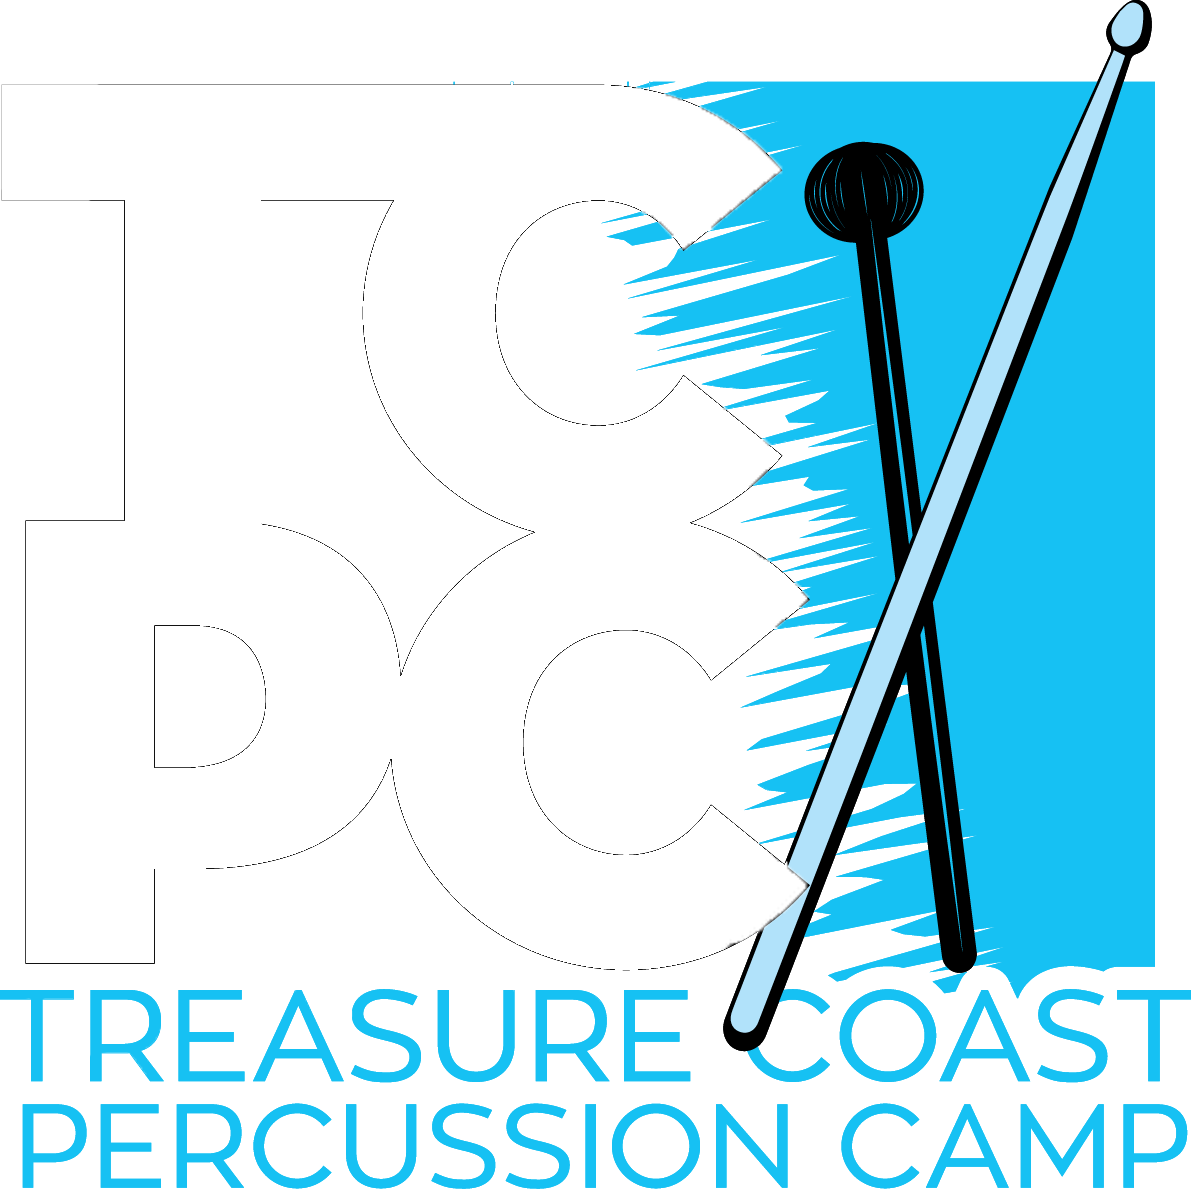 Treasure Coast Percussion Camp